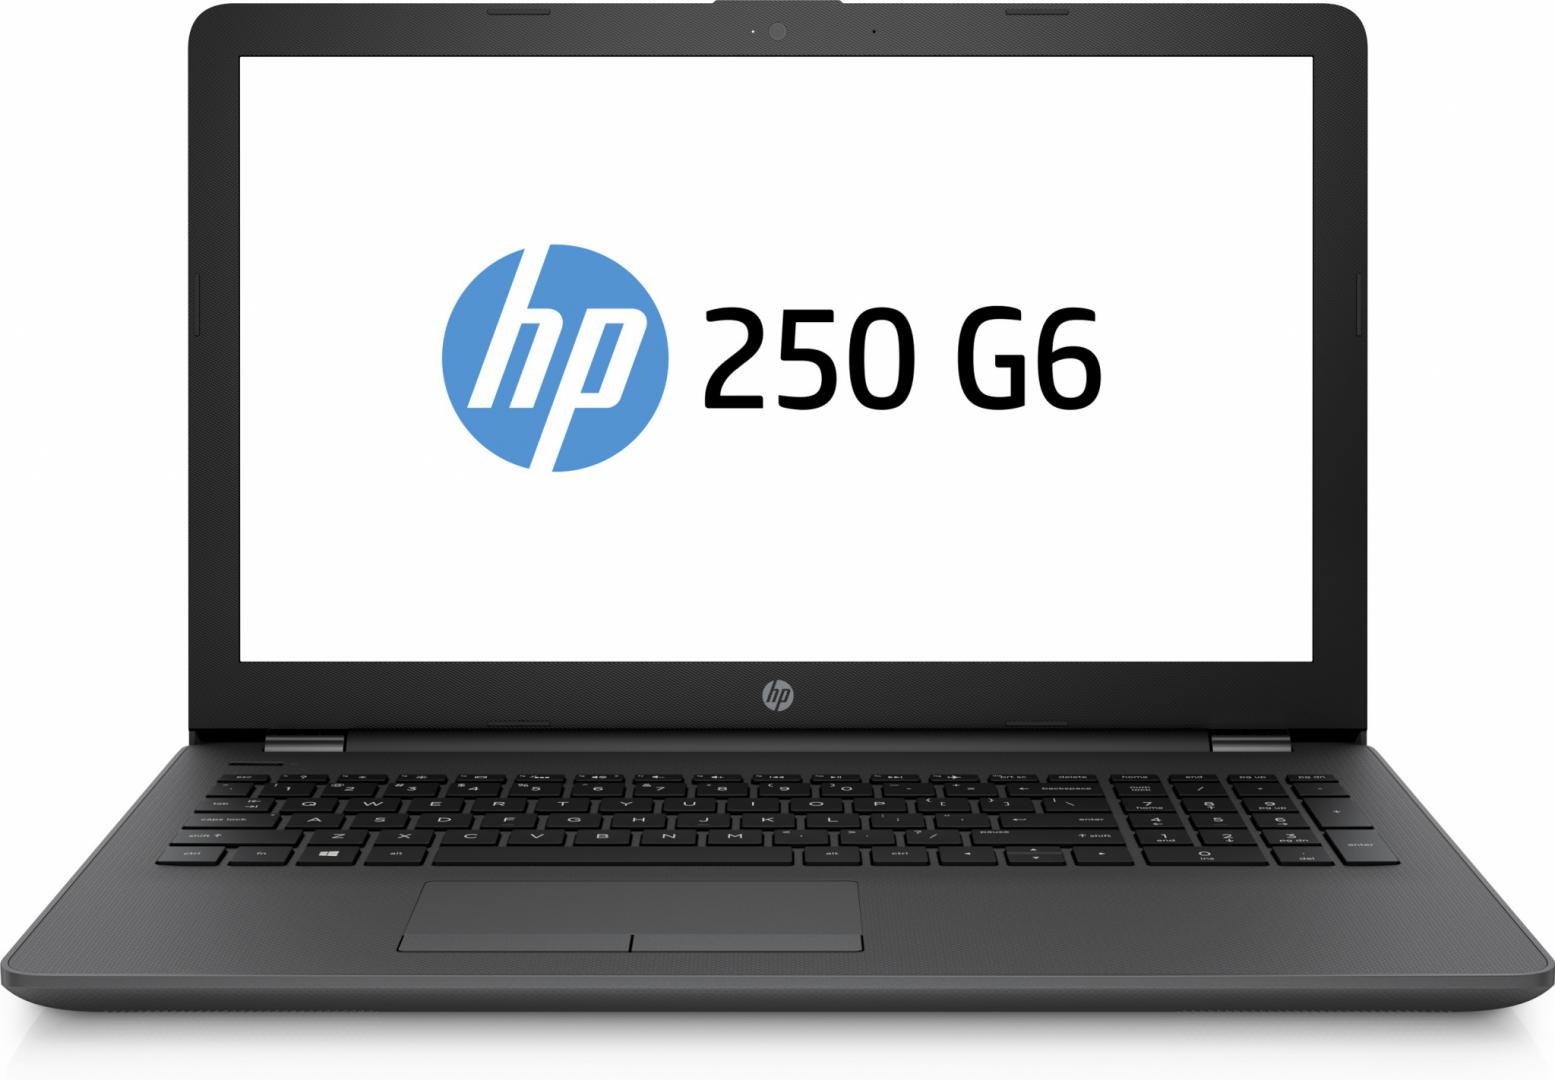 Laptop HP 250 G6, 15.6 inch LED HD Anti-Glare, Intel Celeron N4000, RAM 4GB DDR4 2400, HDD 500GB, Free DOS